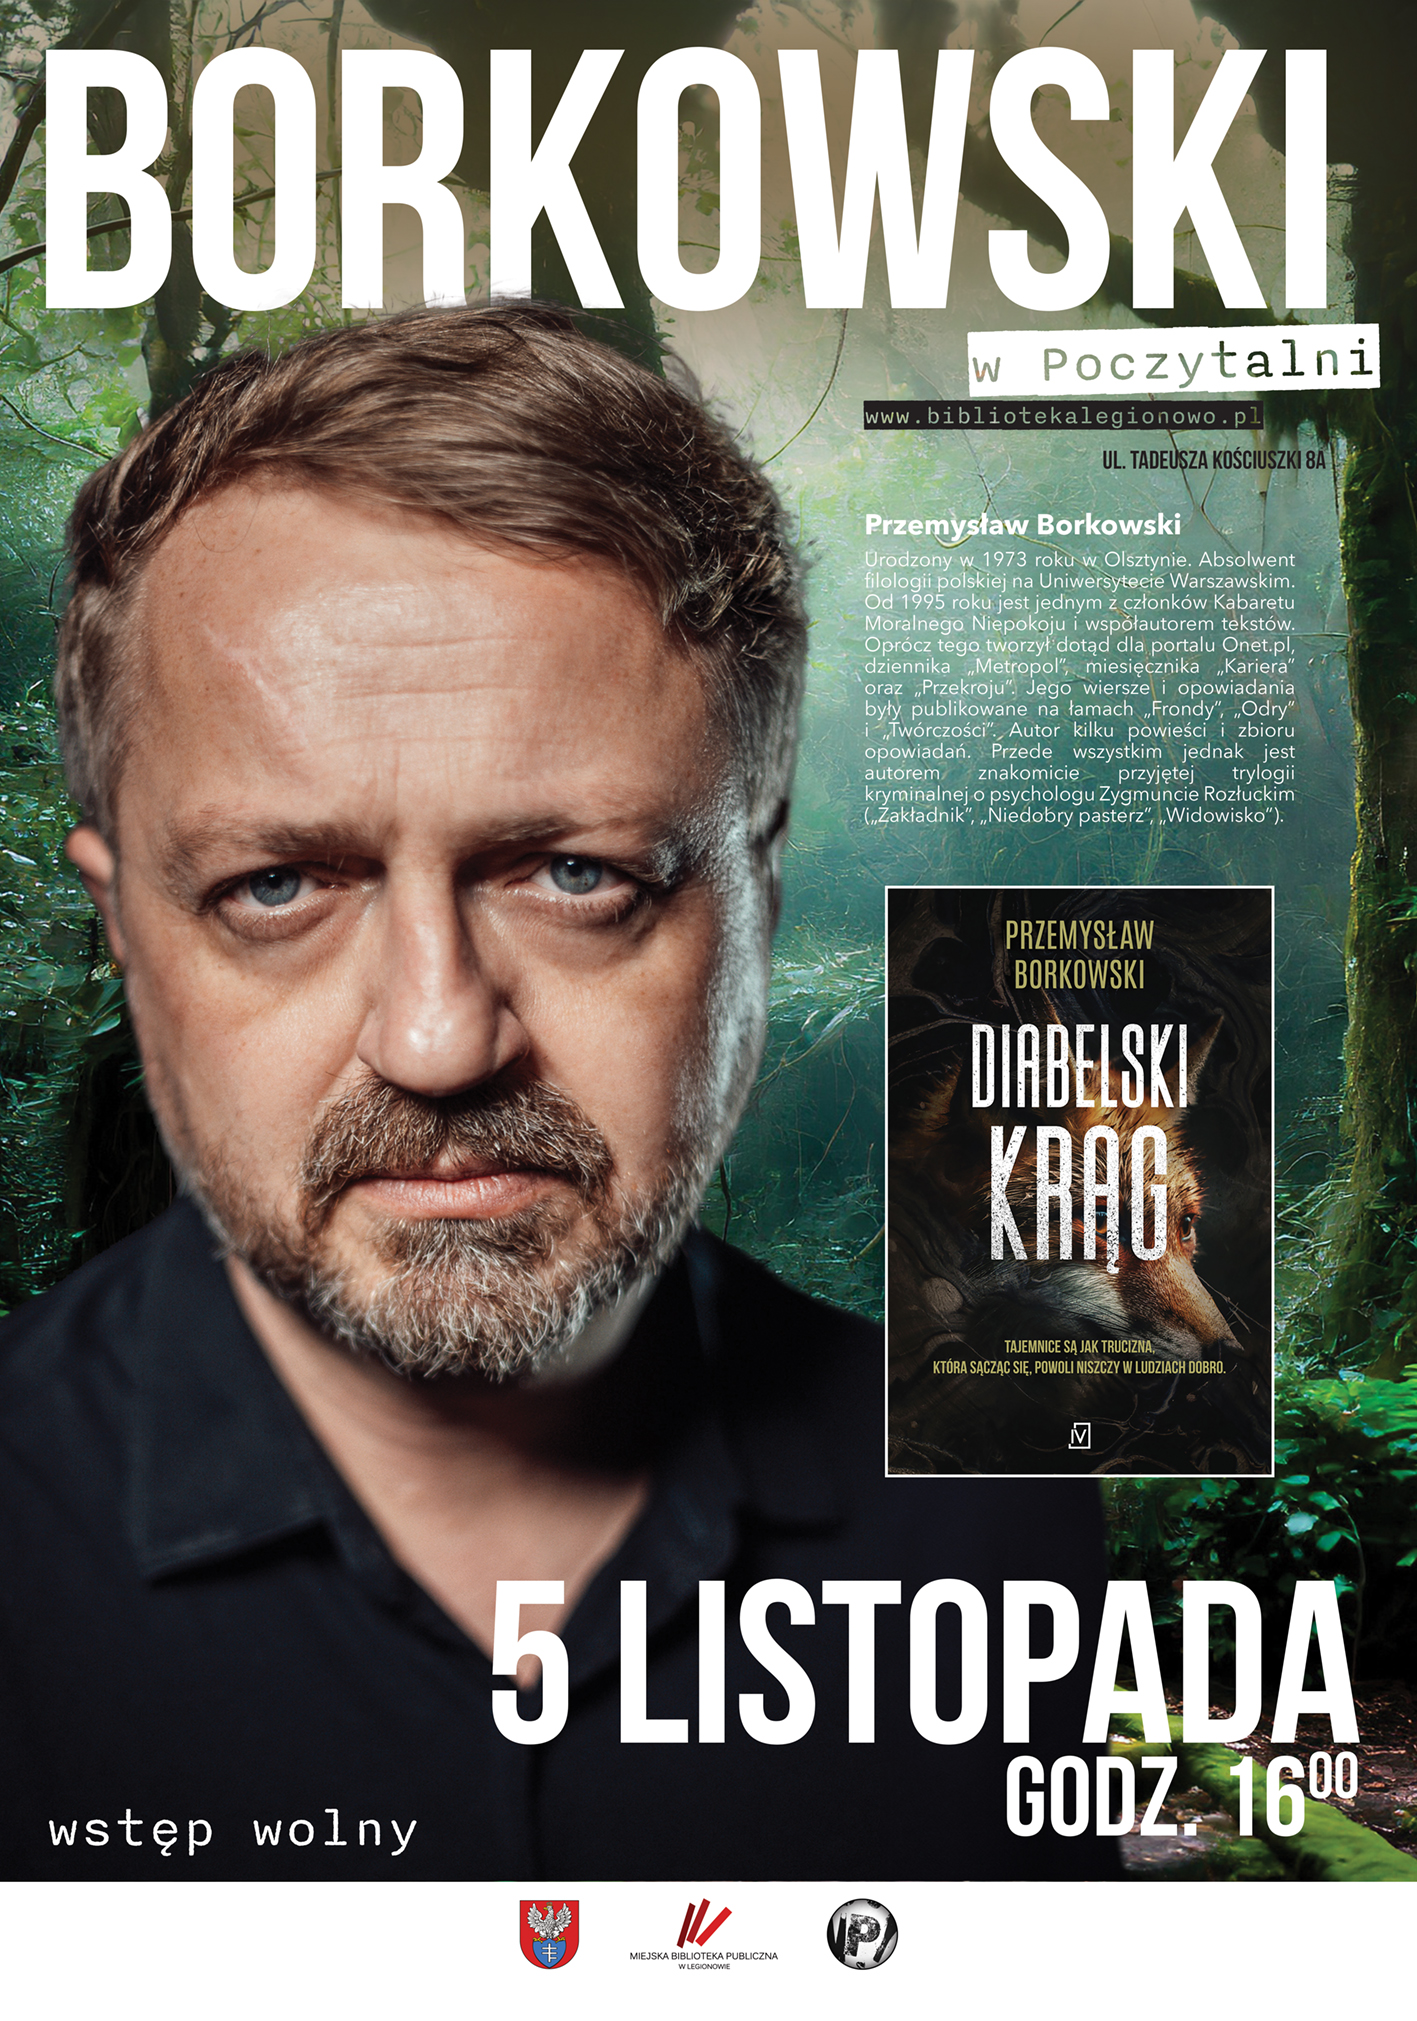 Przemysław Borkowski i jego najnowsza książka: "Diabelski krąg"